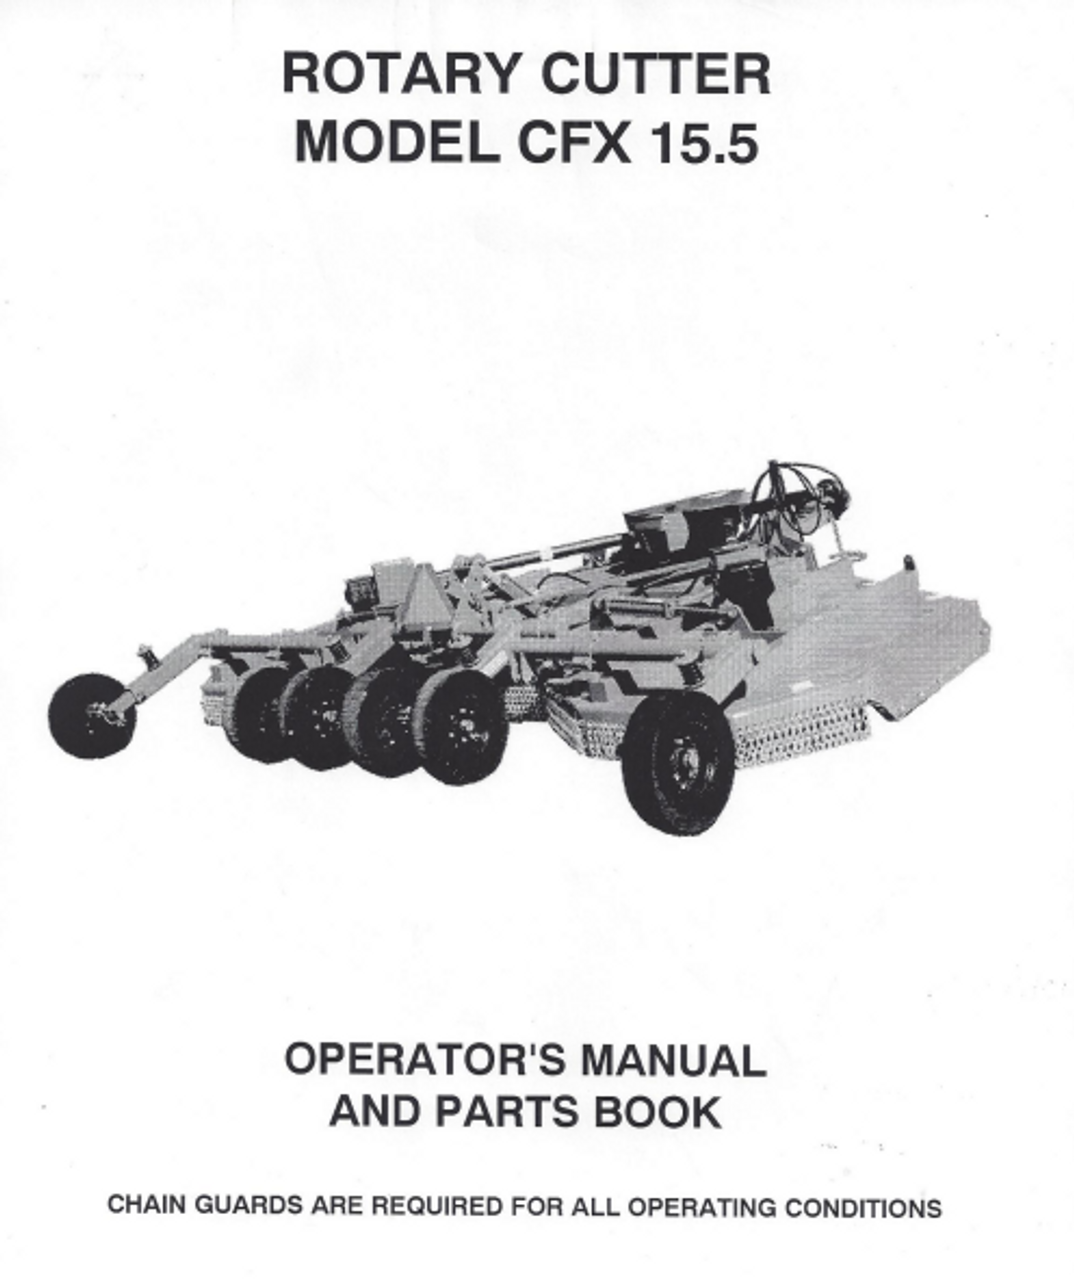 CFX 15.5 Operator's Manual